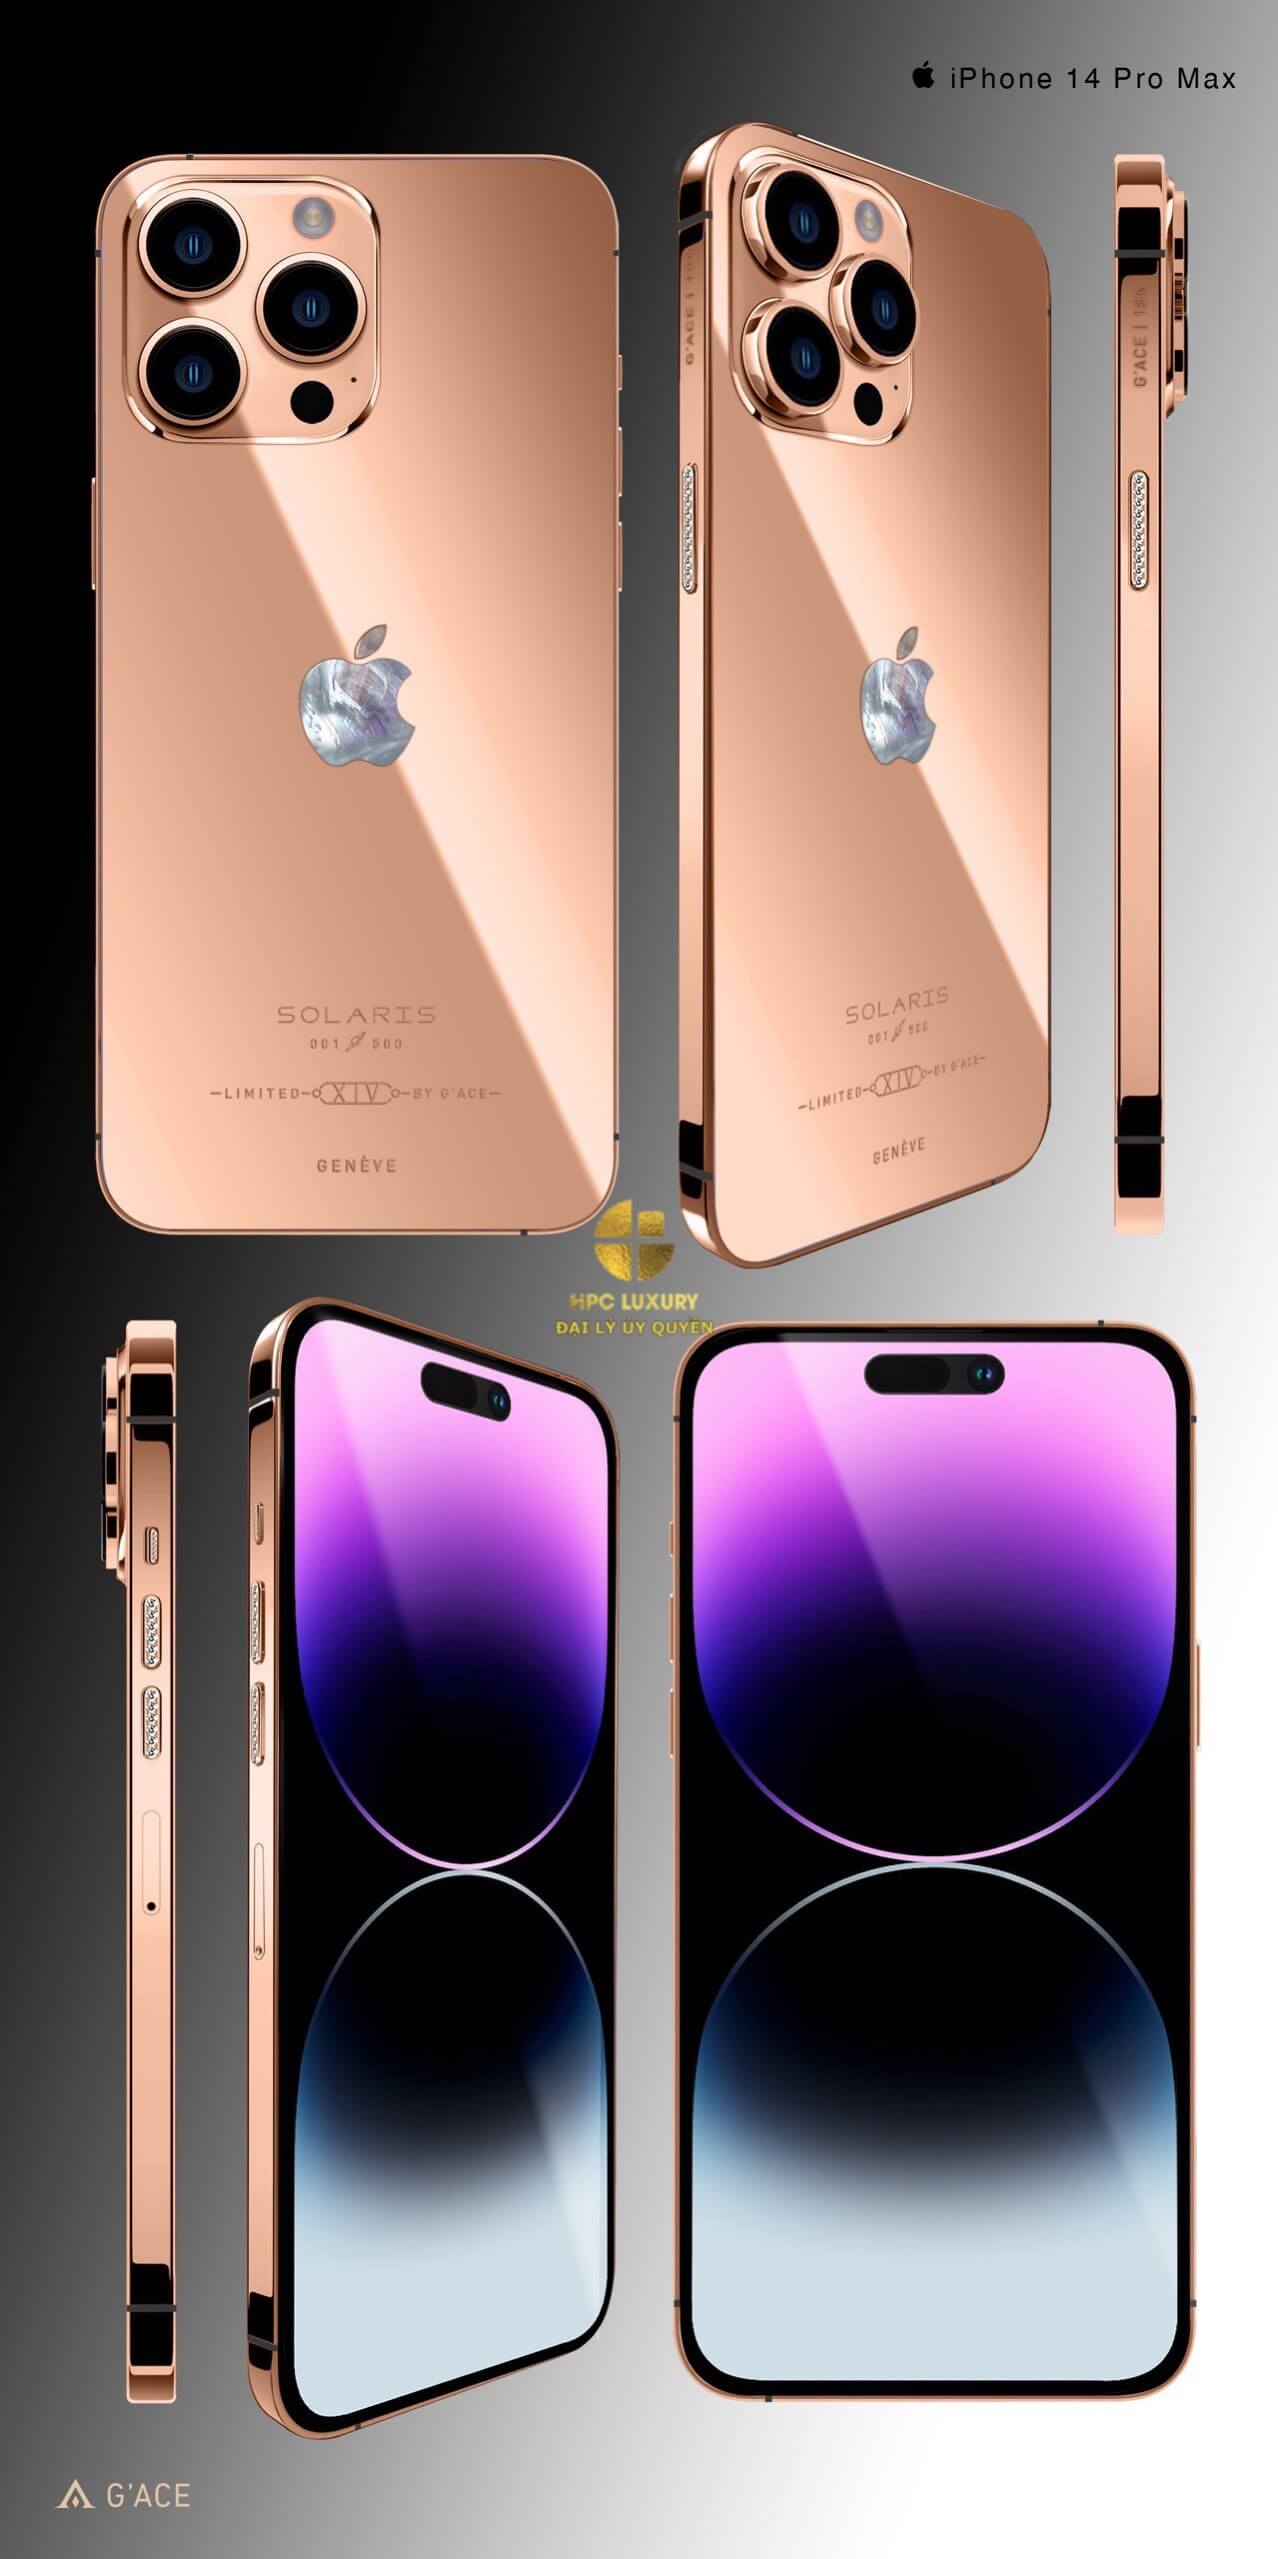 Bạn đang tìm kiếm một chiếc điện thoại iPhone 14 mạ vàng đẳng cấp và sang trọng? Hãy xem ngay ảnh chiếc iPhone 14 Pro Max mạ vàng Gold Solaris limited 256 Gb của HPC Luxury. Với một thiết kế vô cùng tinh tế và đẳng cấp, chiếc điện thoại này sẽ khiến bạn mãn nhãn và thèm muốn sở hữu ngay lập tức.